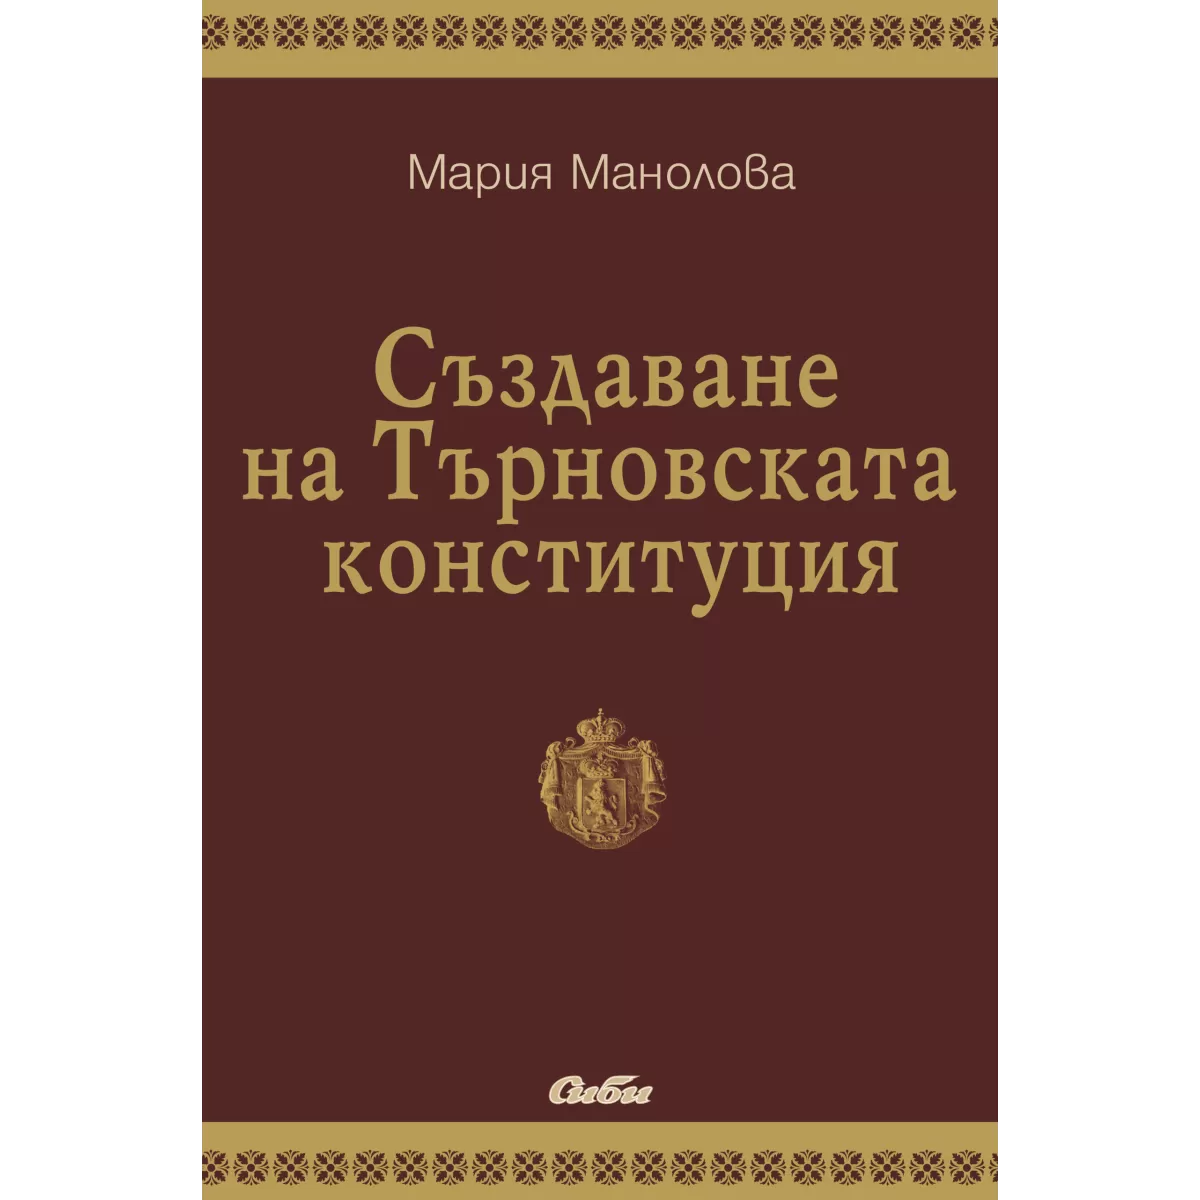 Създаване на Търновската конституция